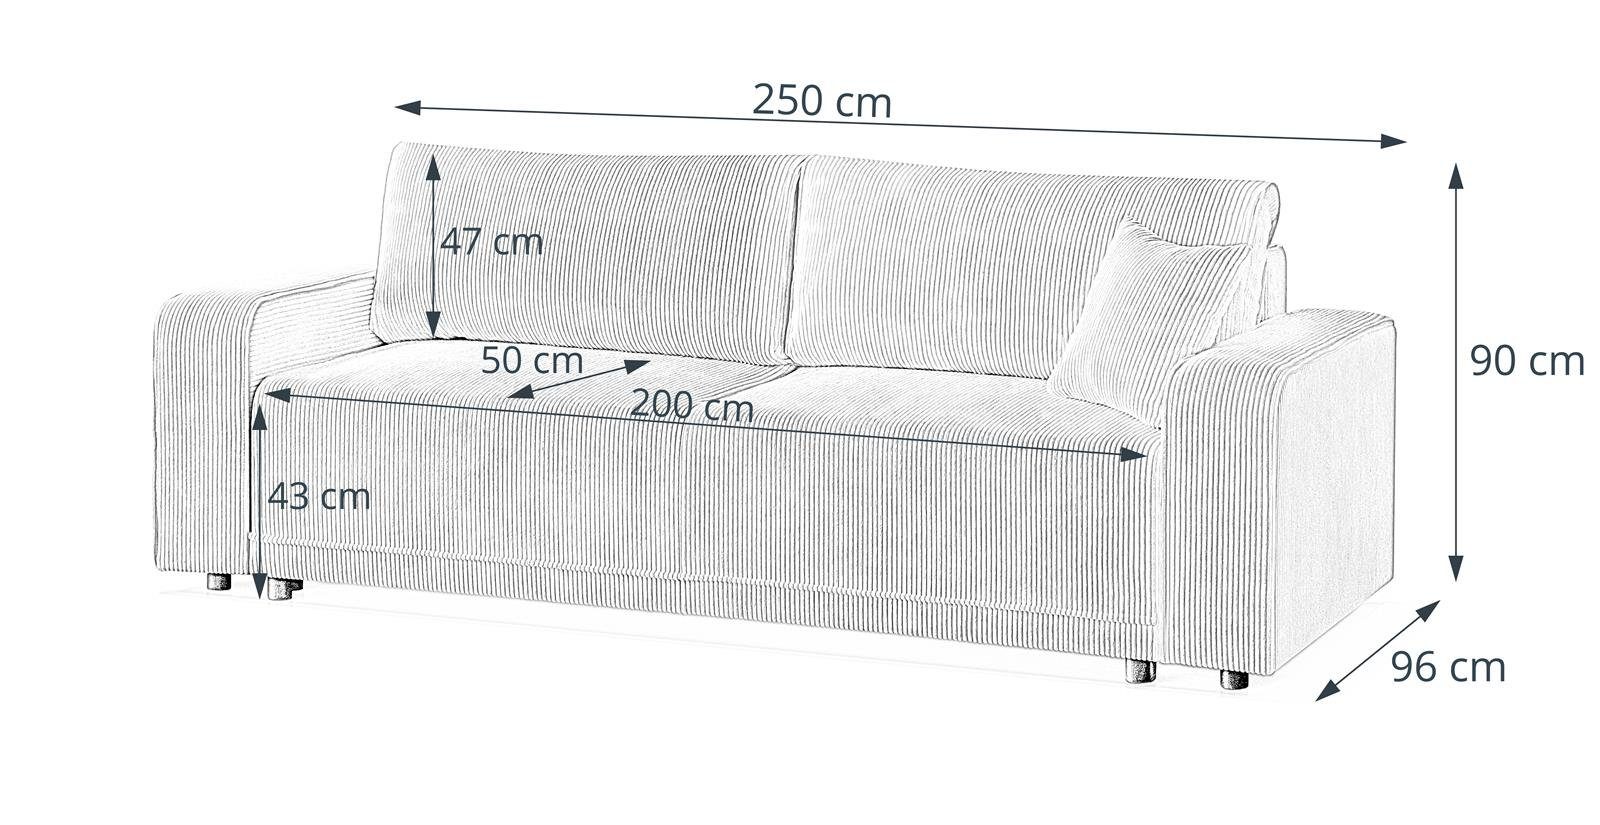 PRIMO, 14) Sofa, Grün Beautysofa modernes Schlaffunktion, Design Armlehnen breite Bettkasten, Wellenfedern, Schlafsofa (poso